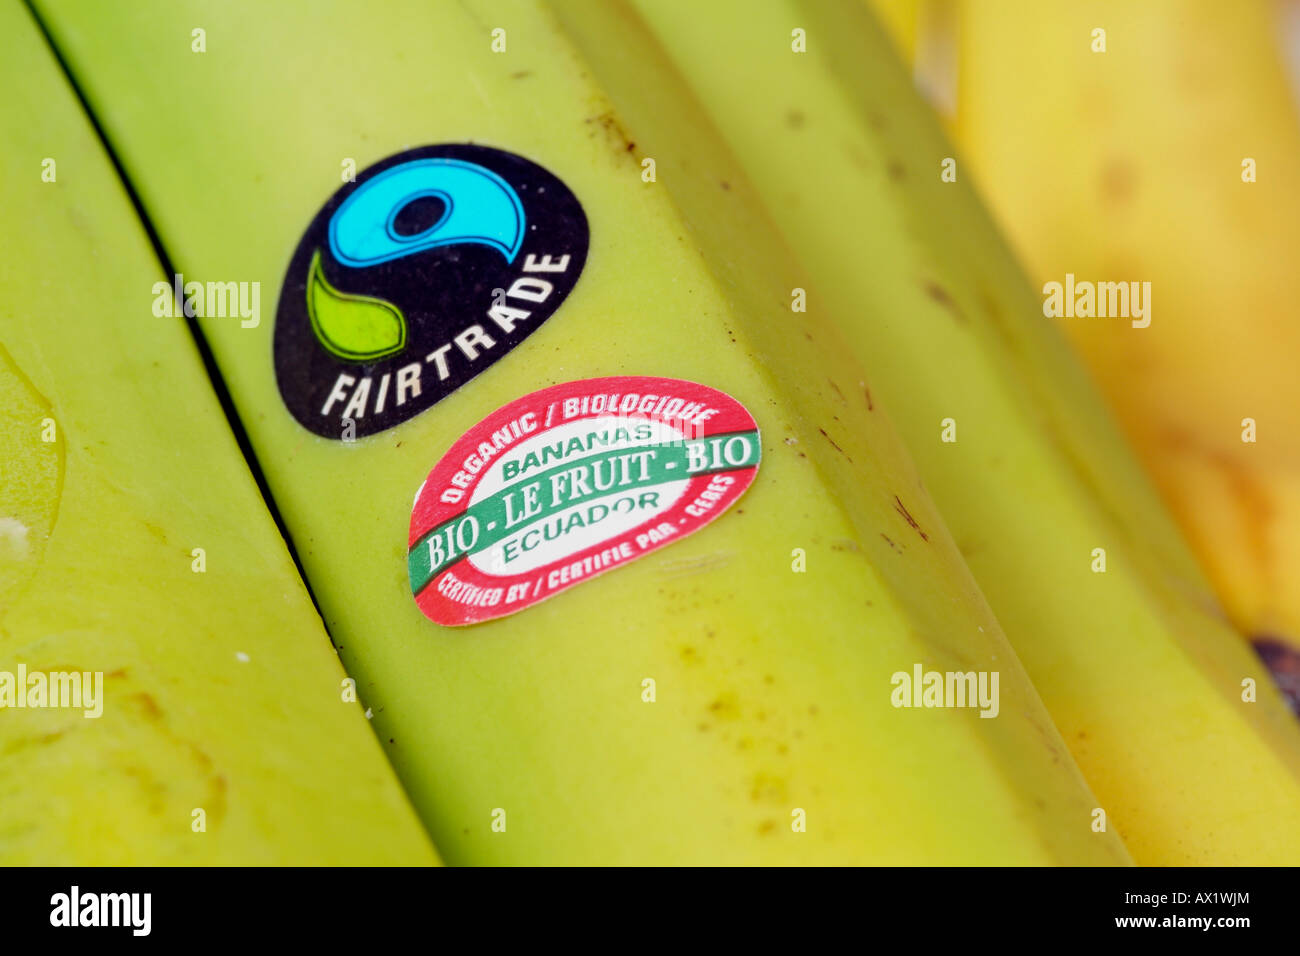 Fairtrade Banana sticker Label with Bio Banana Photo Fairtrade - Organic product Certification Alamy Ecuador Stock